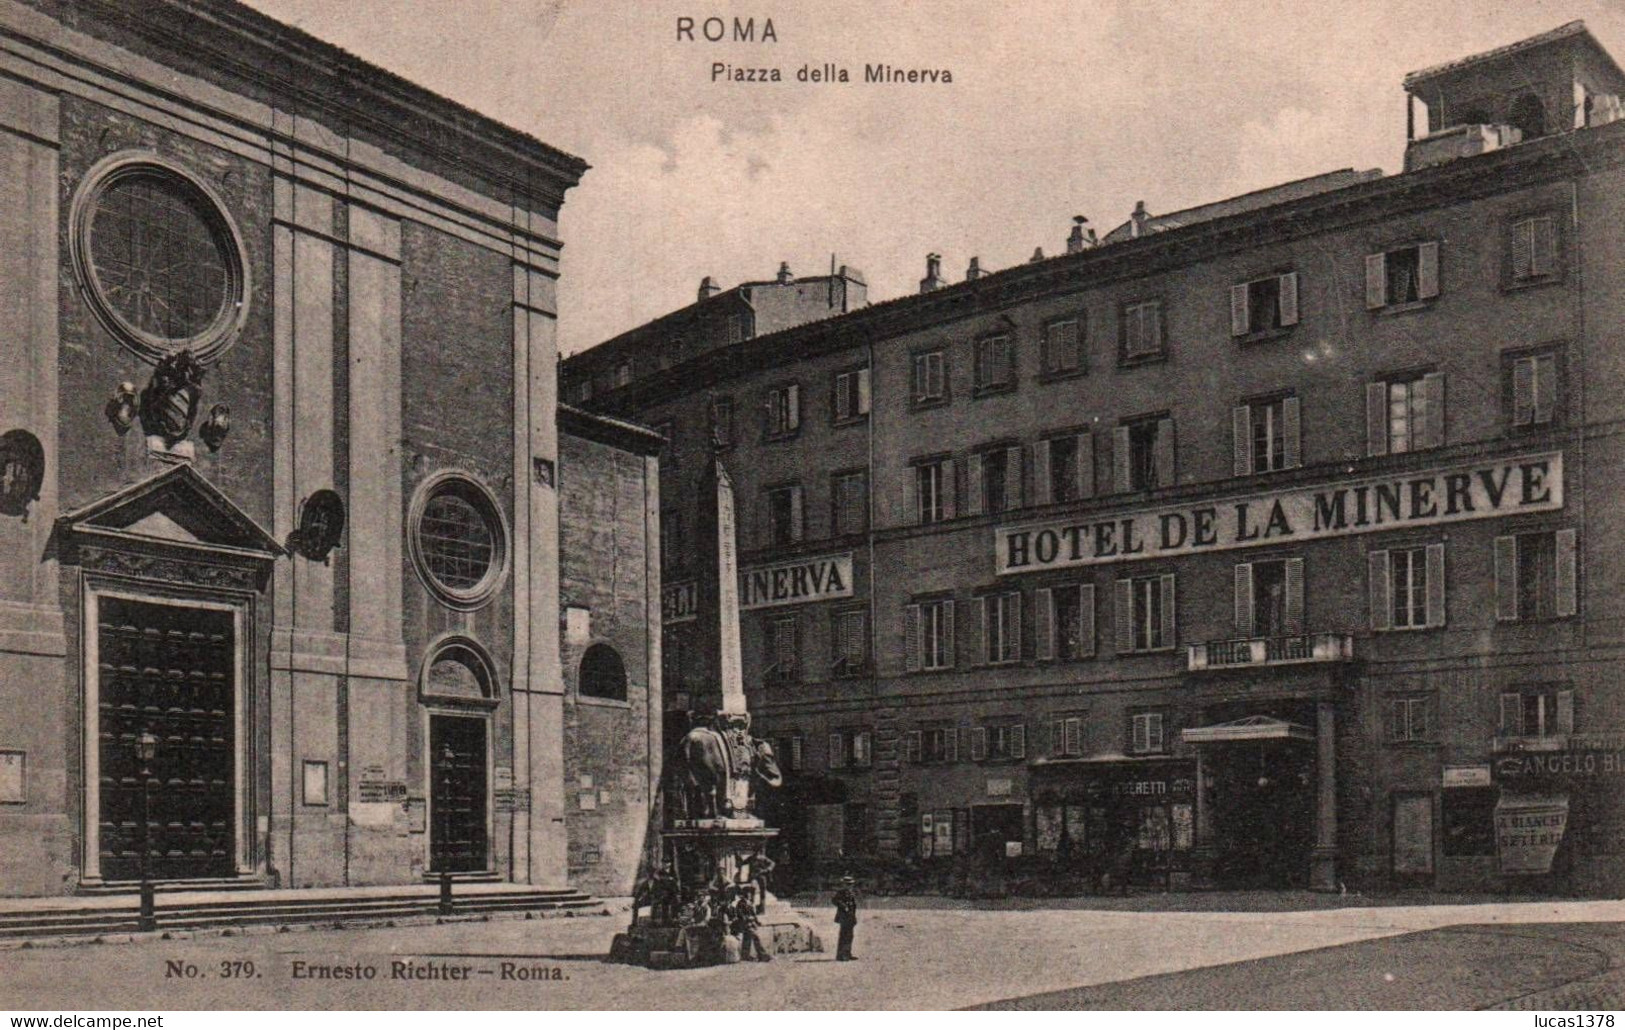 ROMA / PIAZZA DELLA MINERVA / HOTEL DE LA MINERVE - Cafes, Hotels & Restaurants